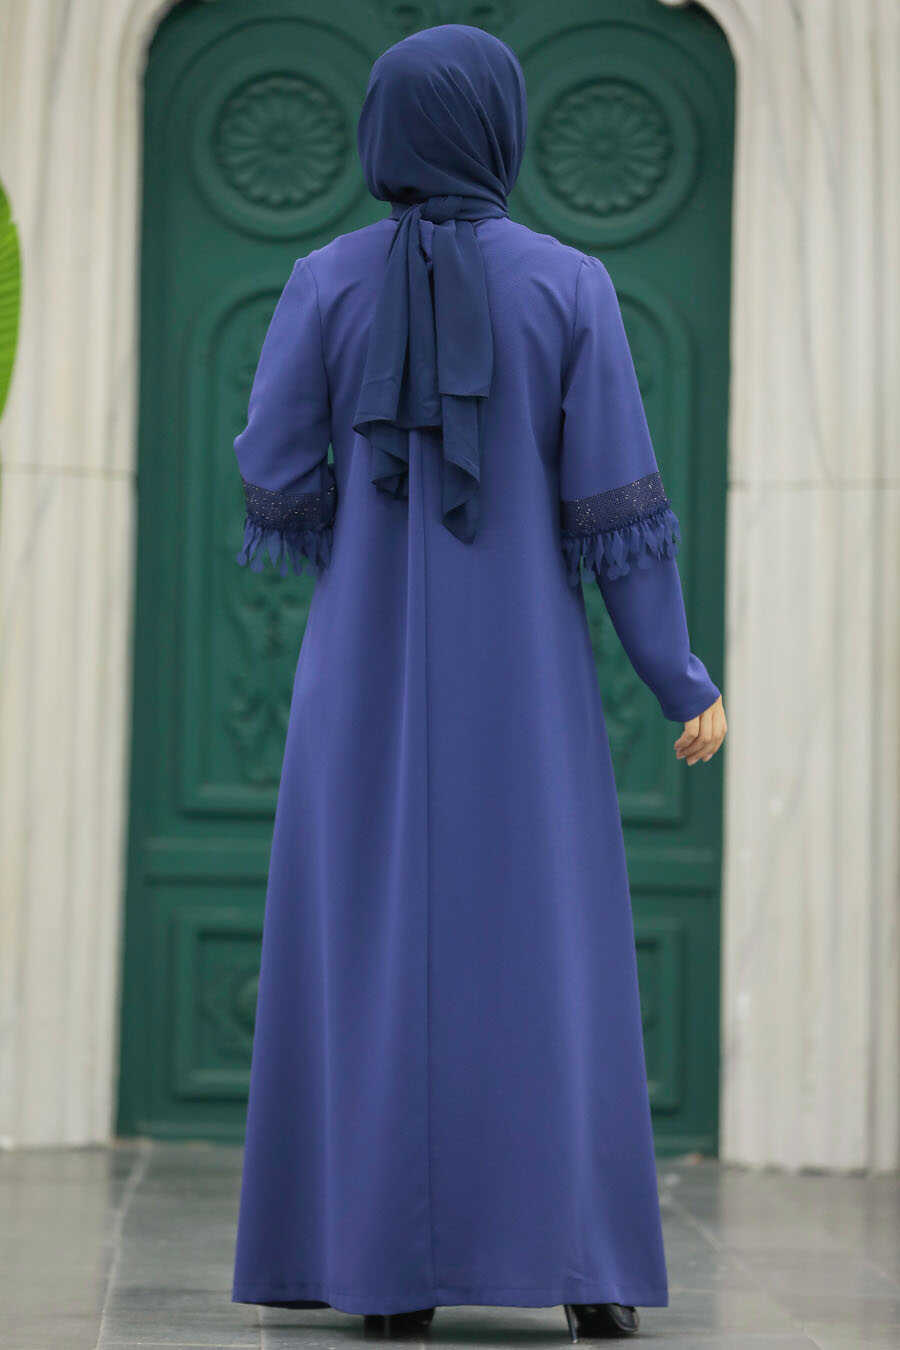 Neva Style - İndigo Blue Hijab For Women Turkish Abaya 10021IM